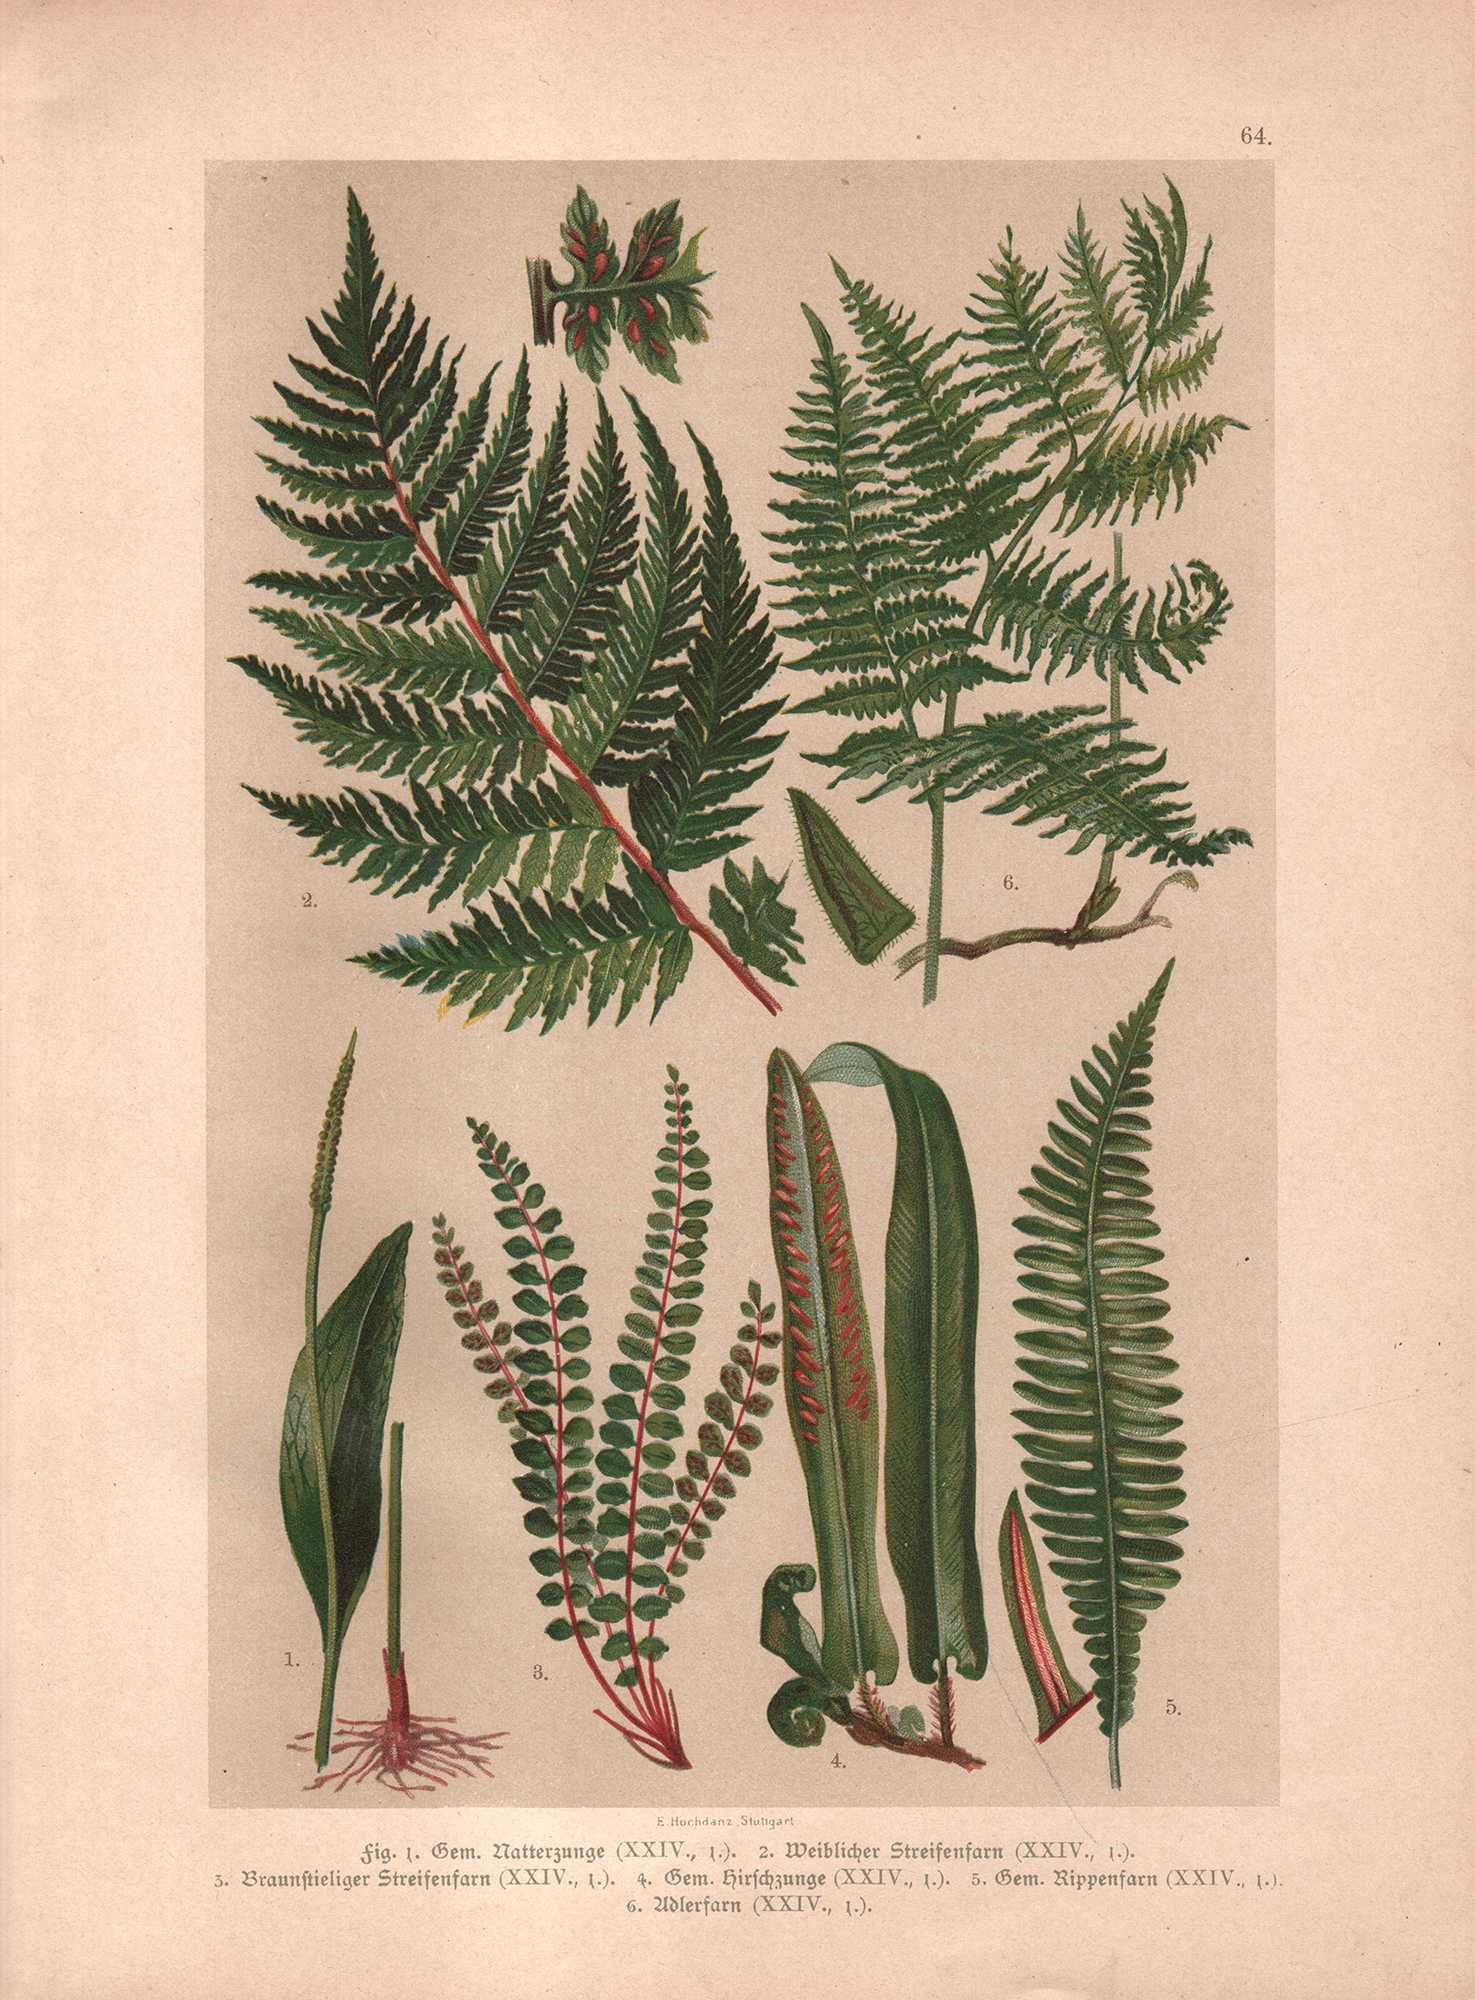 Hochdanz: Rośliny zioła paprocie botanika litografia 1901 r. autentyk